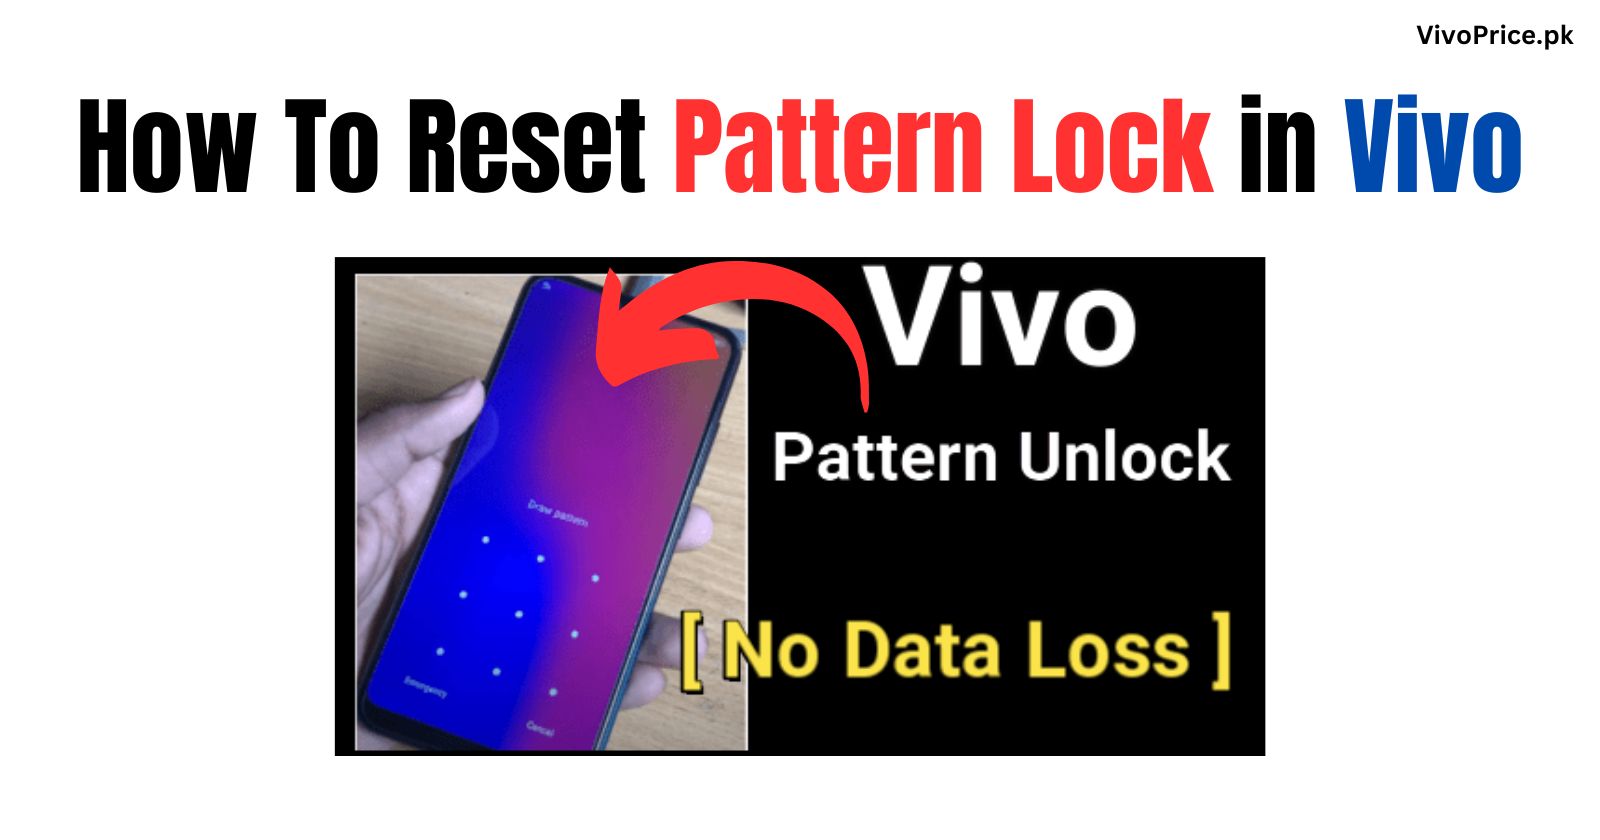 How To Reset Pattern Lock in Vivo | VivoPrice.pk